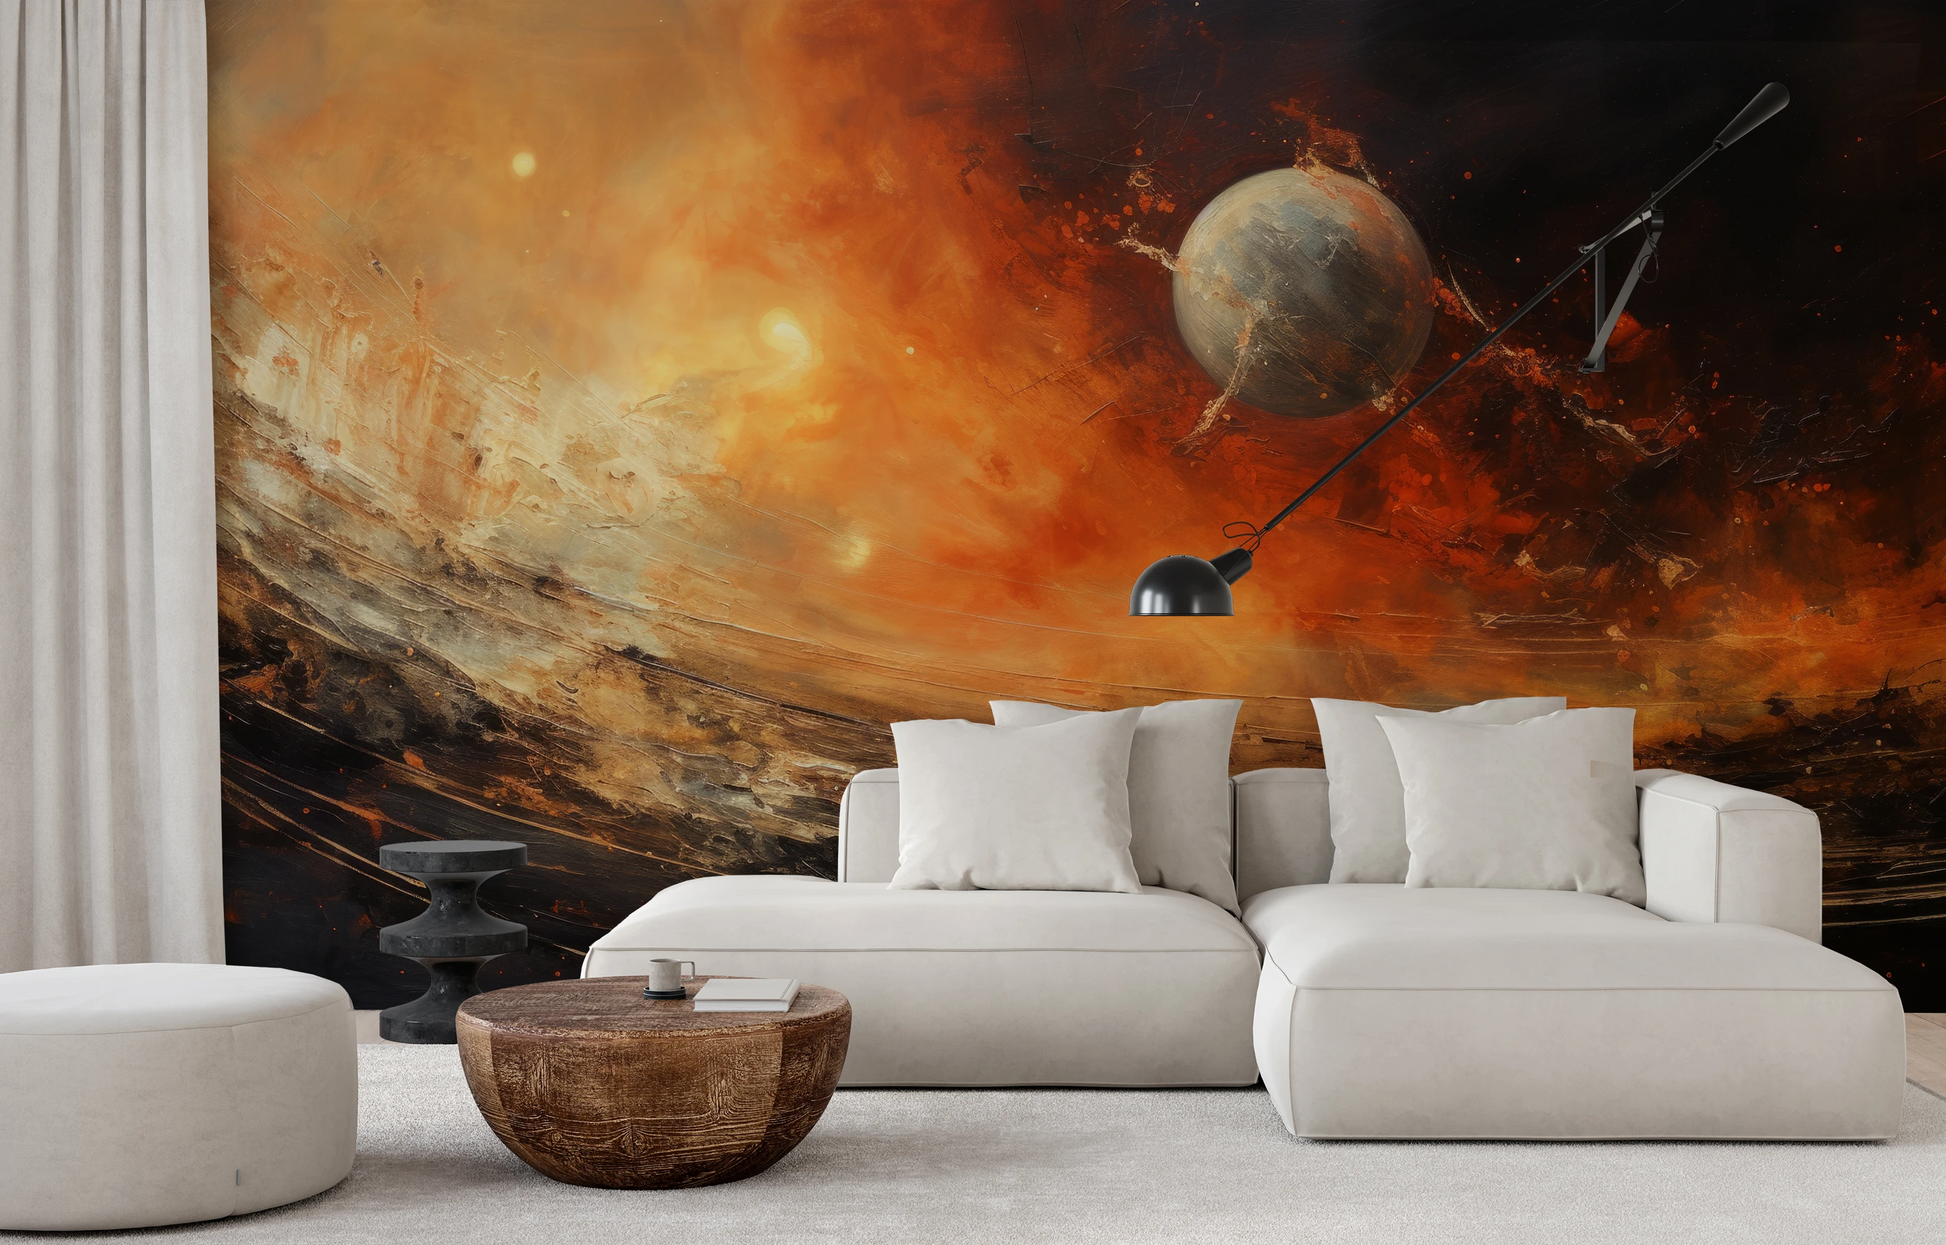 Wzór fototapety malowanej o nazwie Celestial Journey pokazanej w aranżacji wnętrza.